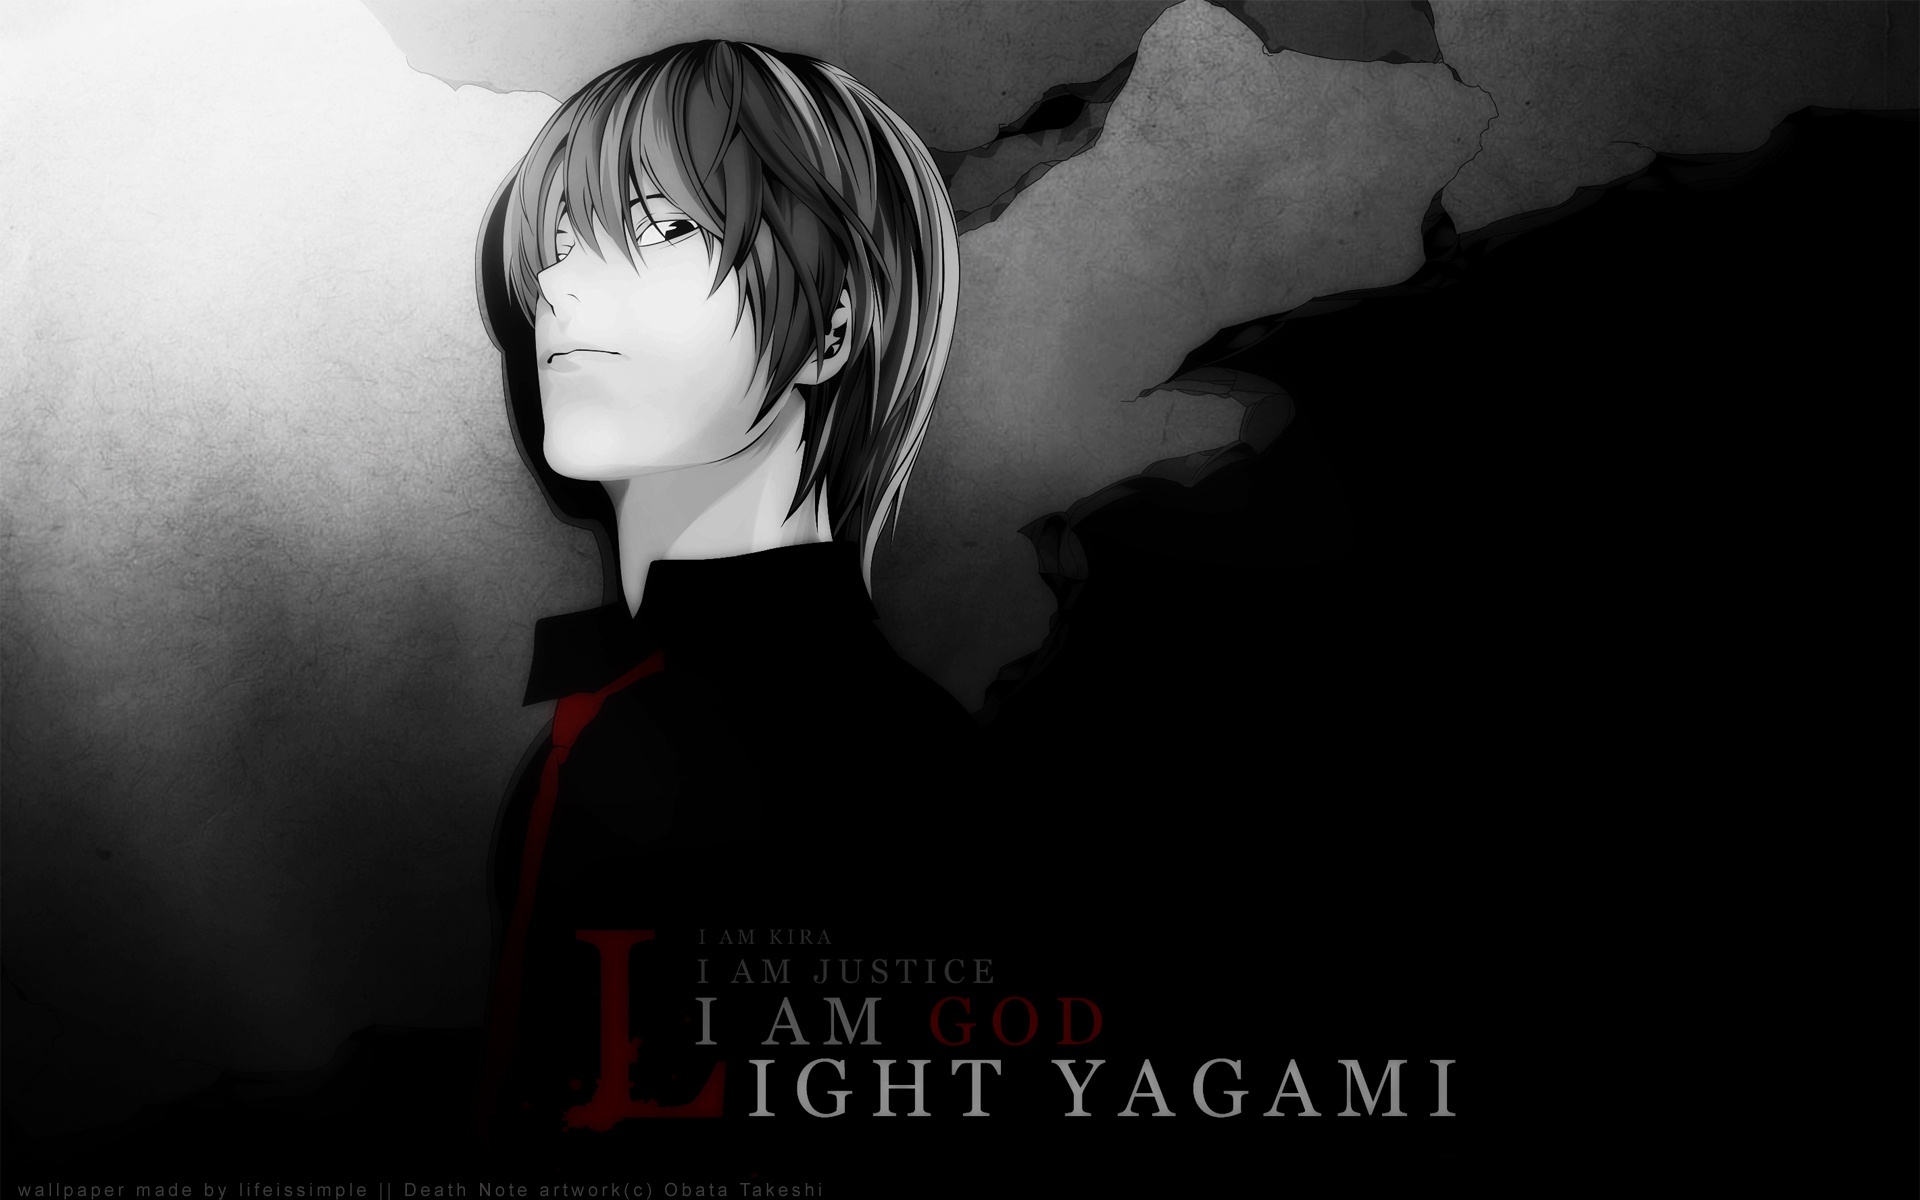 3d обои Кира из аниме Death note (I am Kira. I am justice. A am God. A am Light Yagami)  фразы # 83667